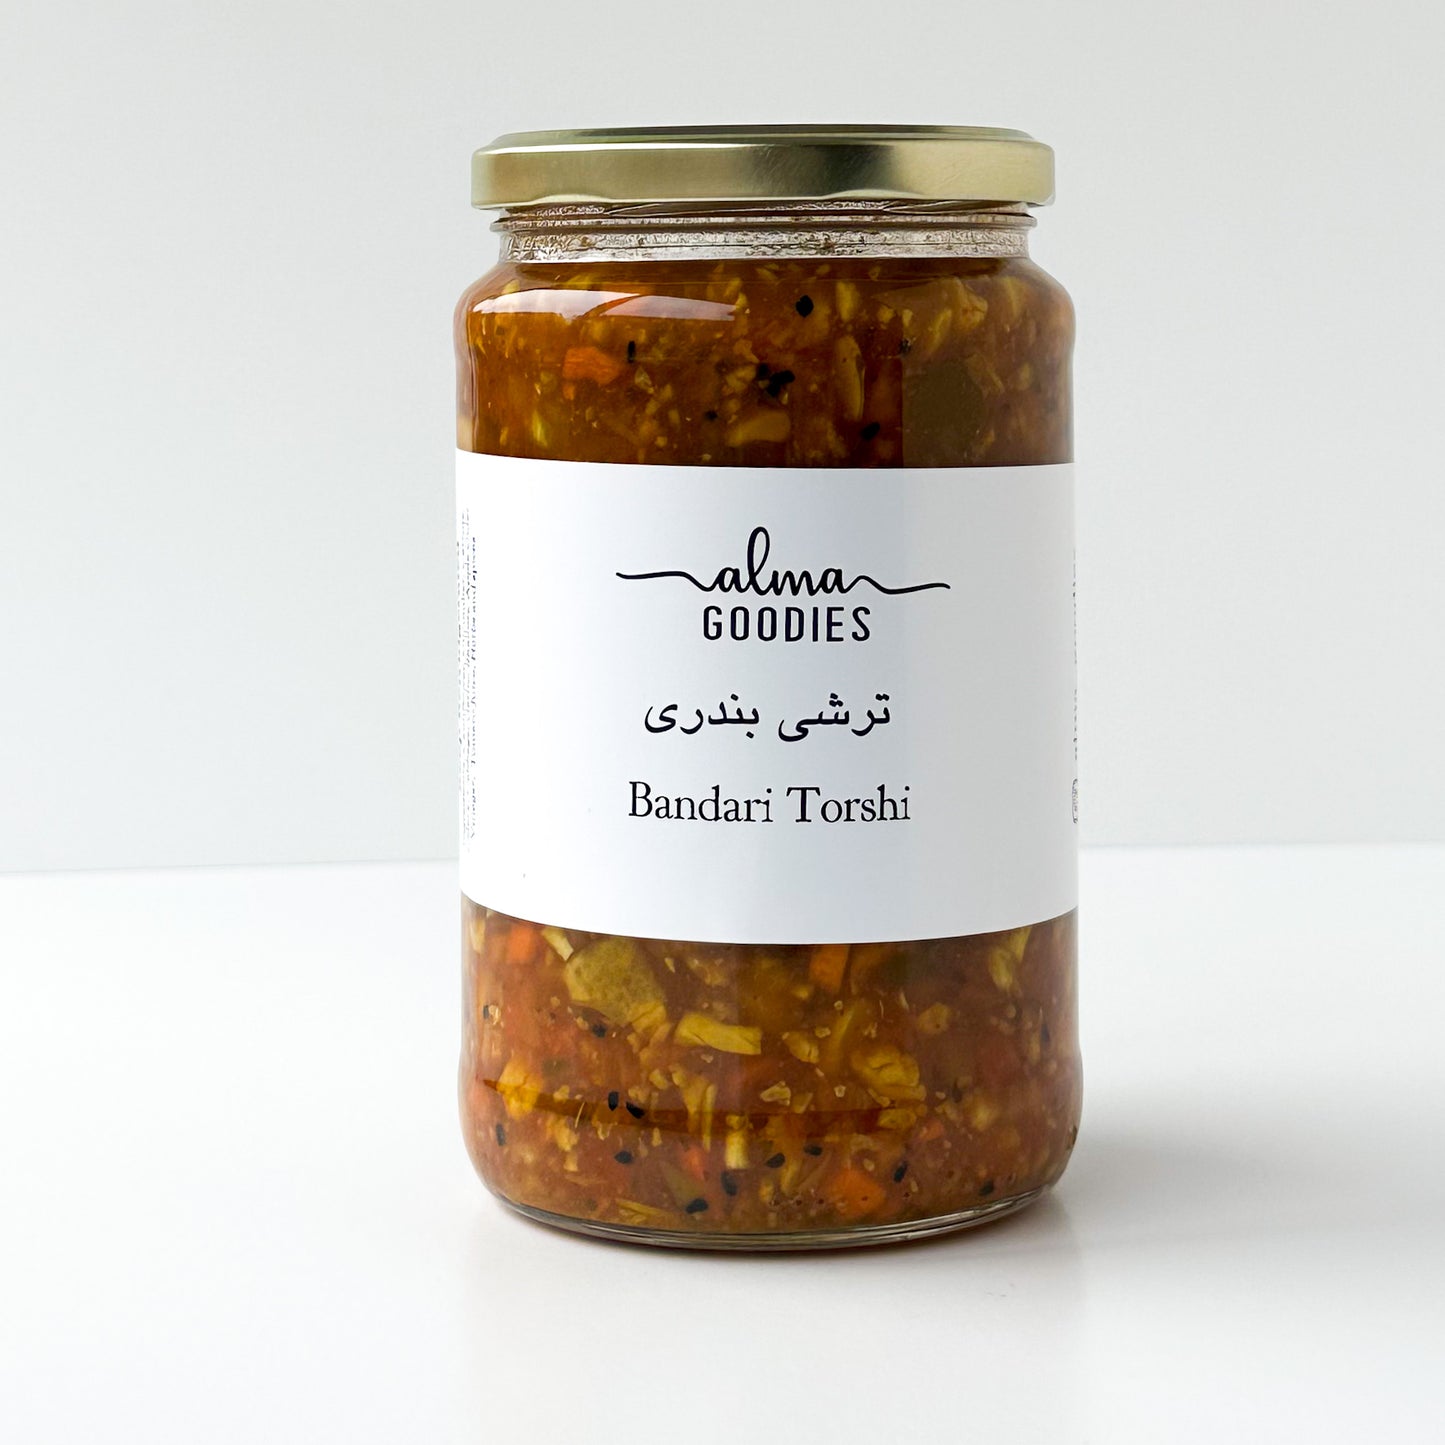 Bandari Torshi - The Authentic Persian Pickle (750 grams)